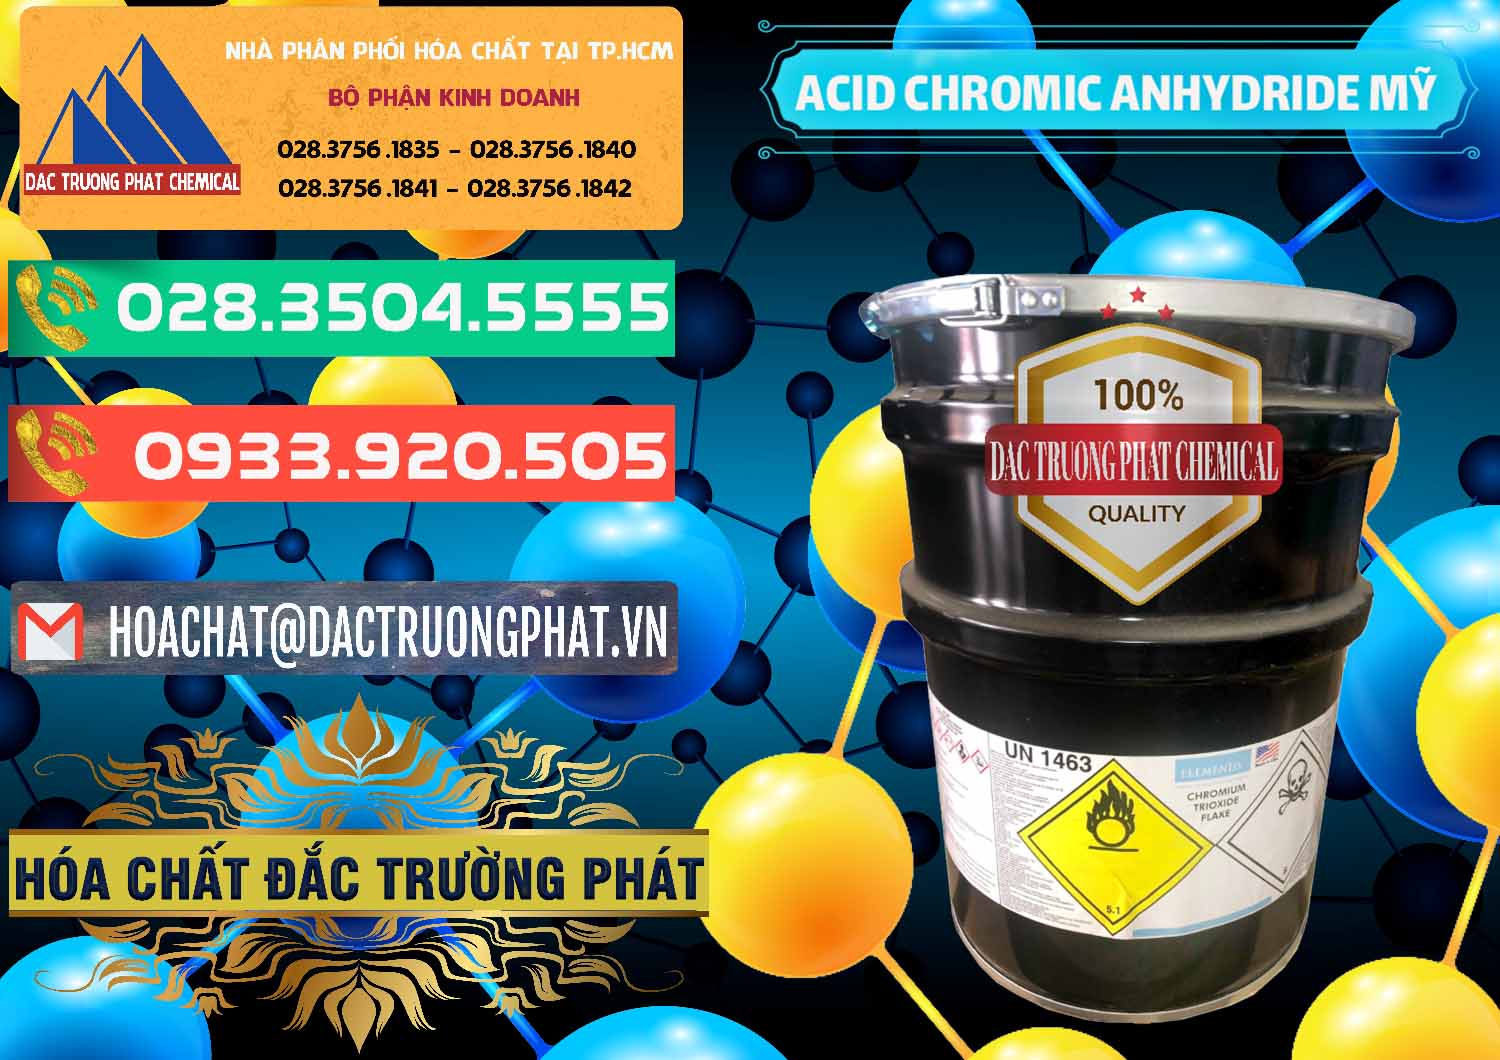 Công ty chuyên nhập khẩu & bán Acid Chromic Anhydride - Cromic CRO3 USA Mỹ - 0364 - Nhà phân phối & bán hóa chất tại TP.HCM - congtyhoachat.com.vn